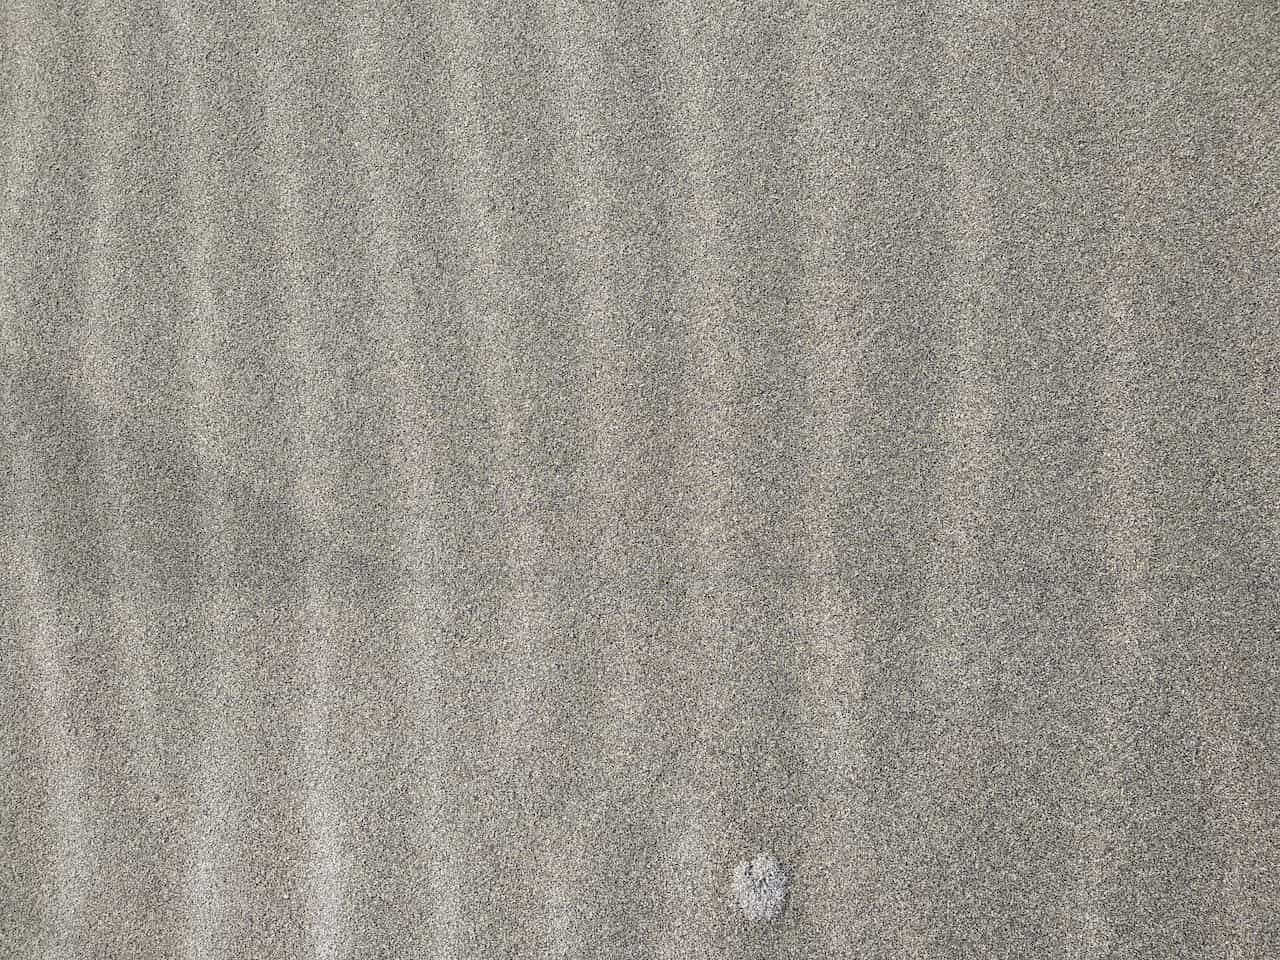 中田島砂丘の砂